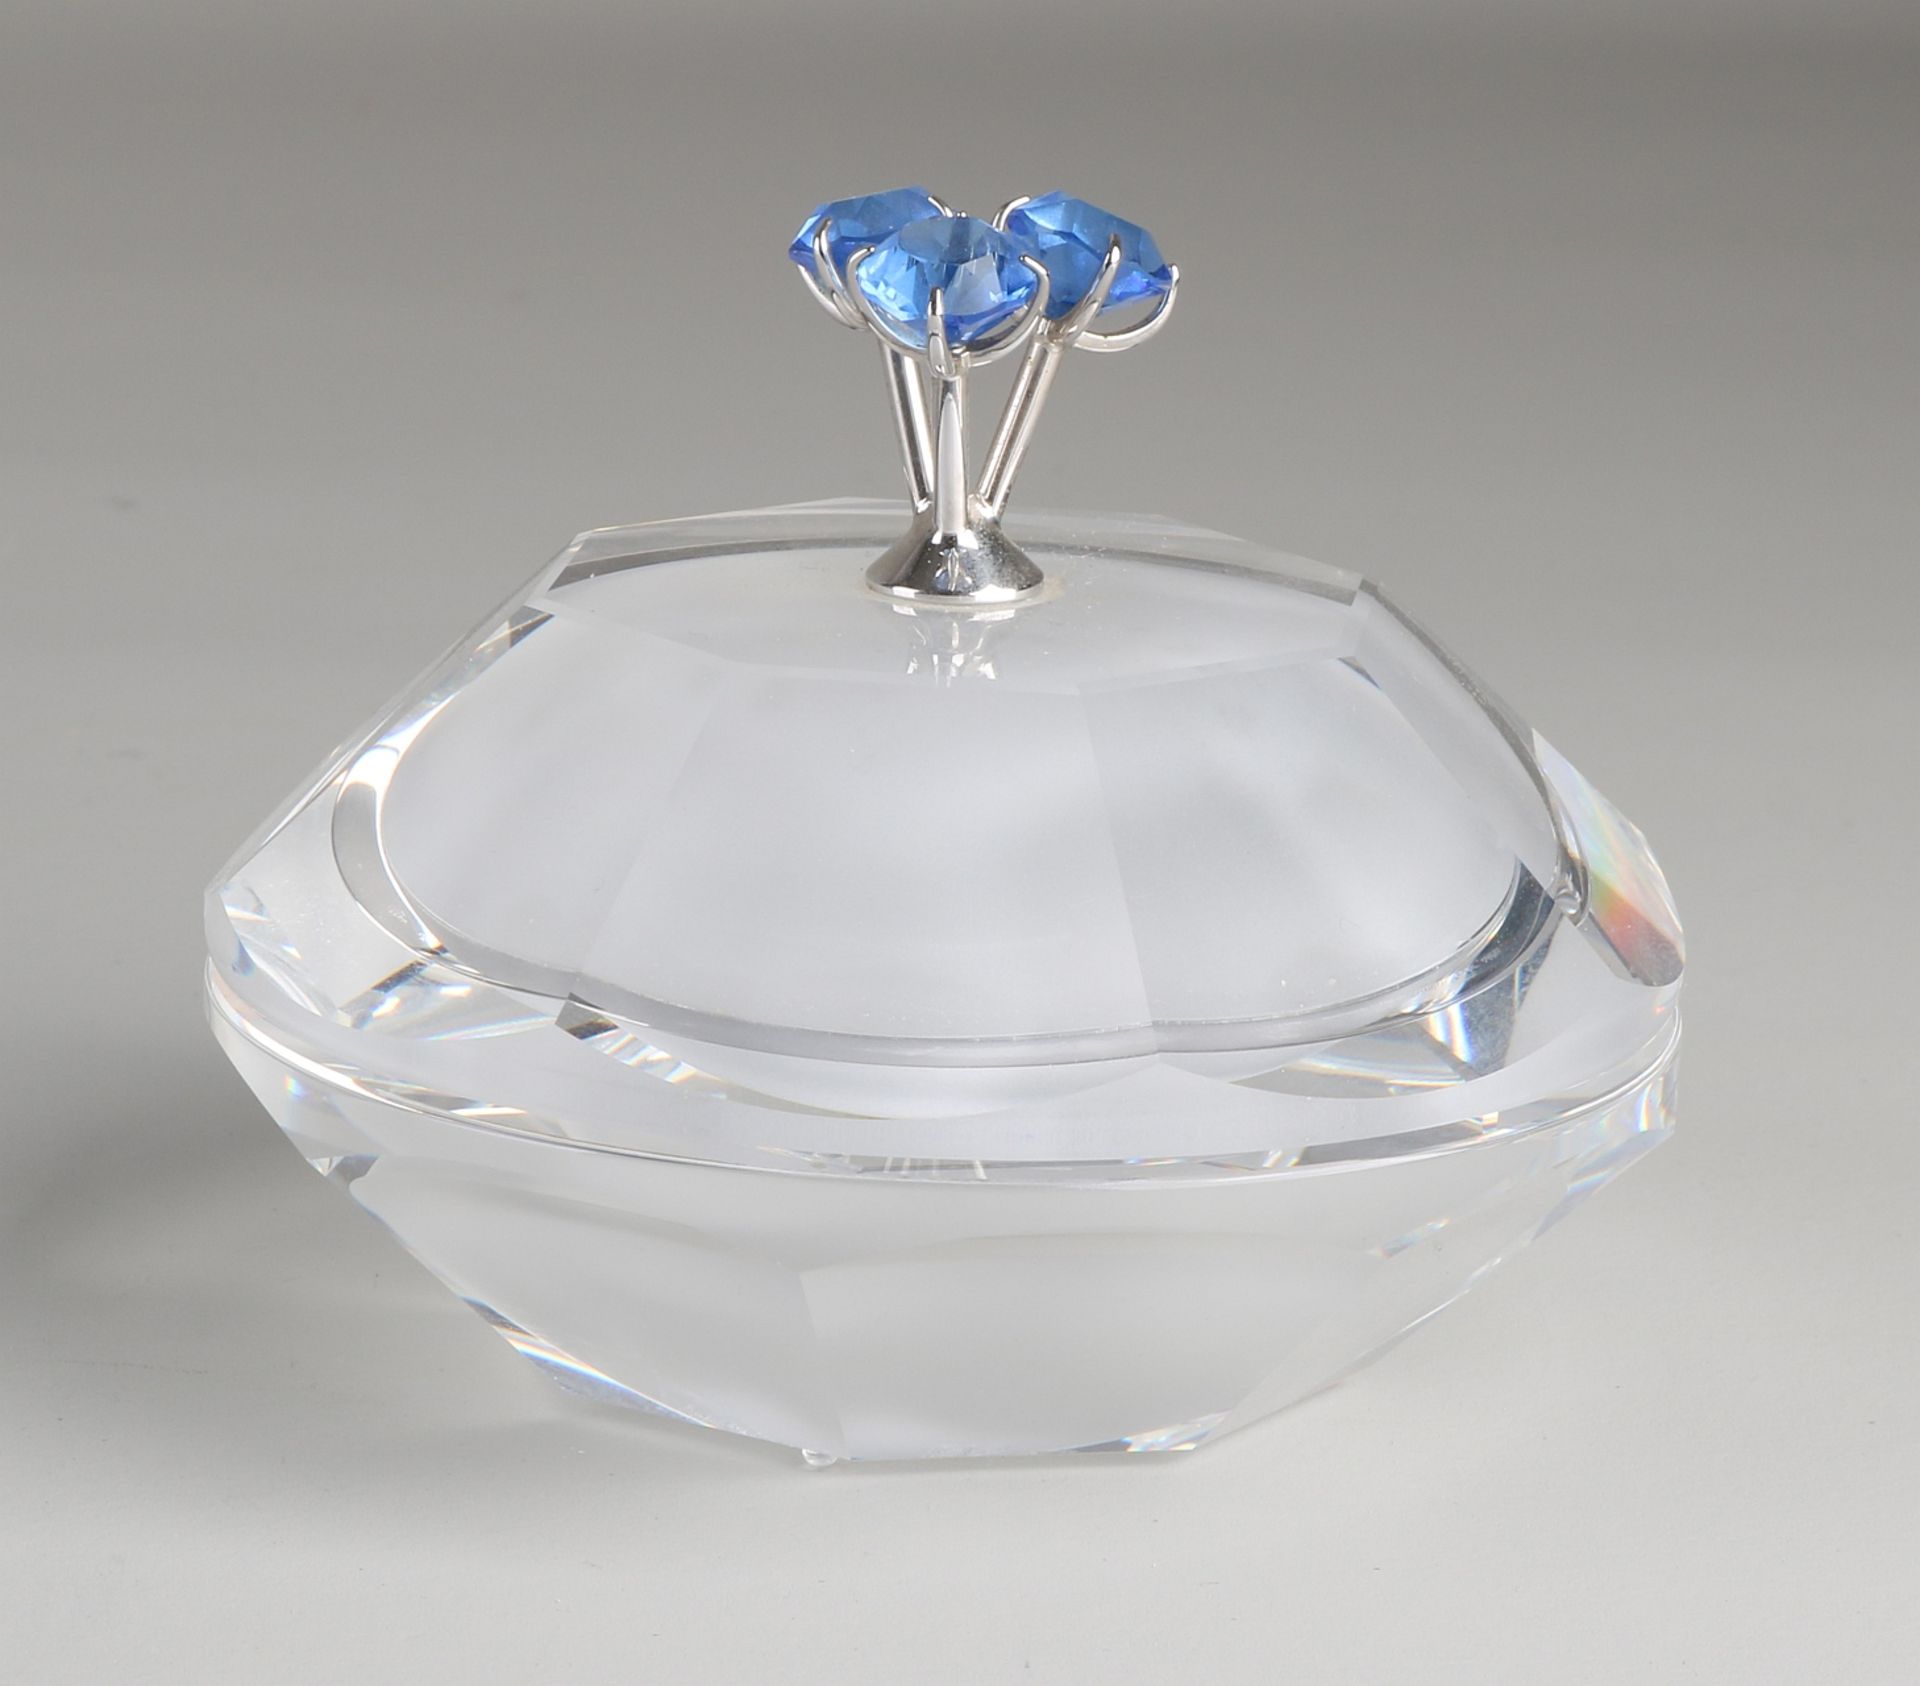 Swarovski Kristall 'Astro' Deckelbox mit drei rautenförmigen blauen Kristallglassteinen auf dem De